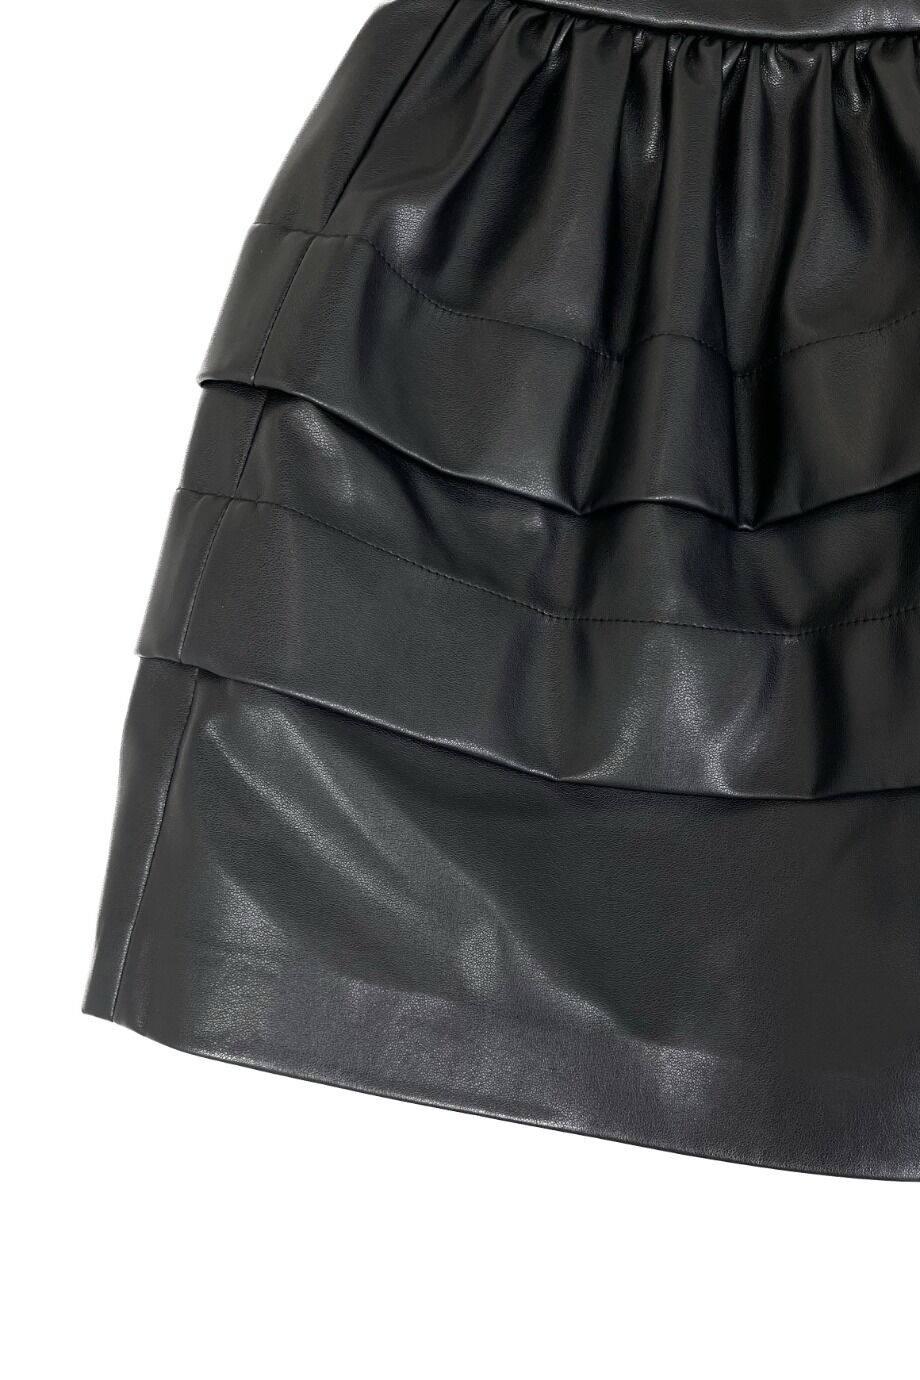 image 2 Детская юбка черного цвета из экокожи